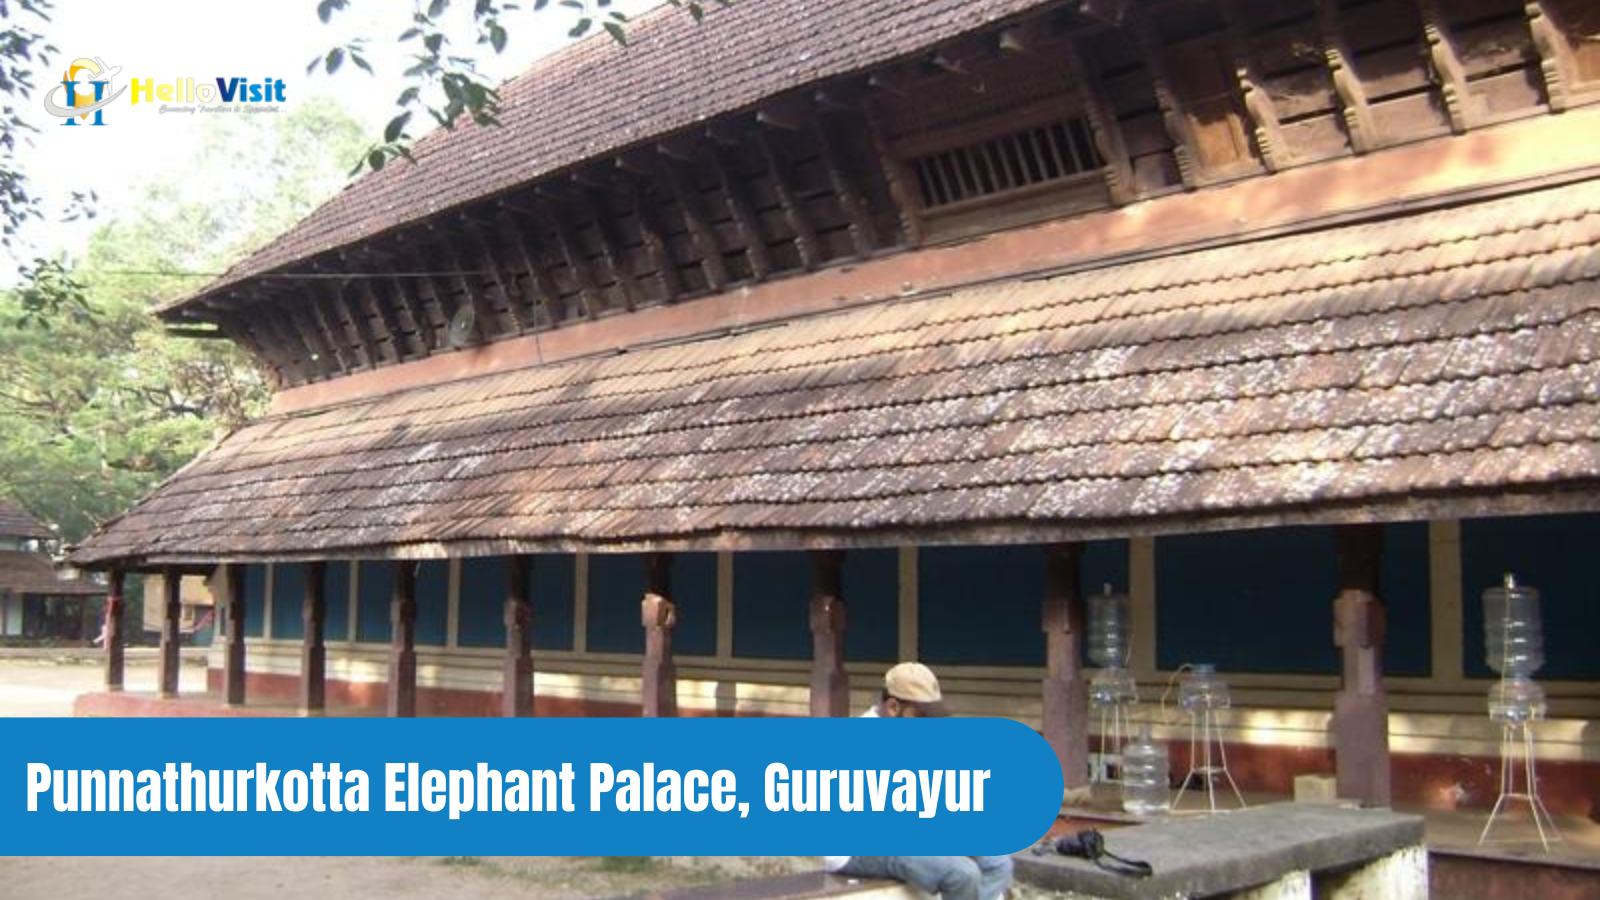 Punnathurkotta Elephant Palace, Guruvayur